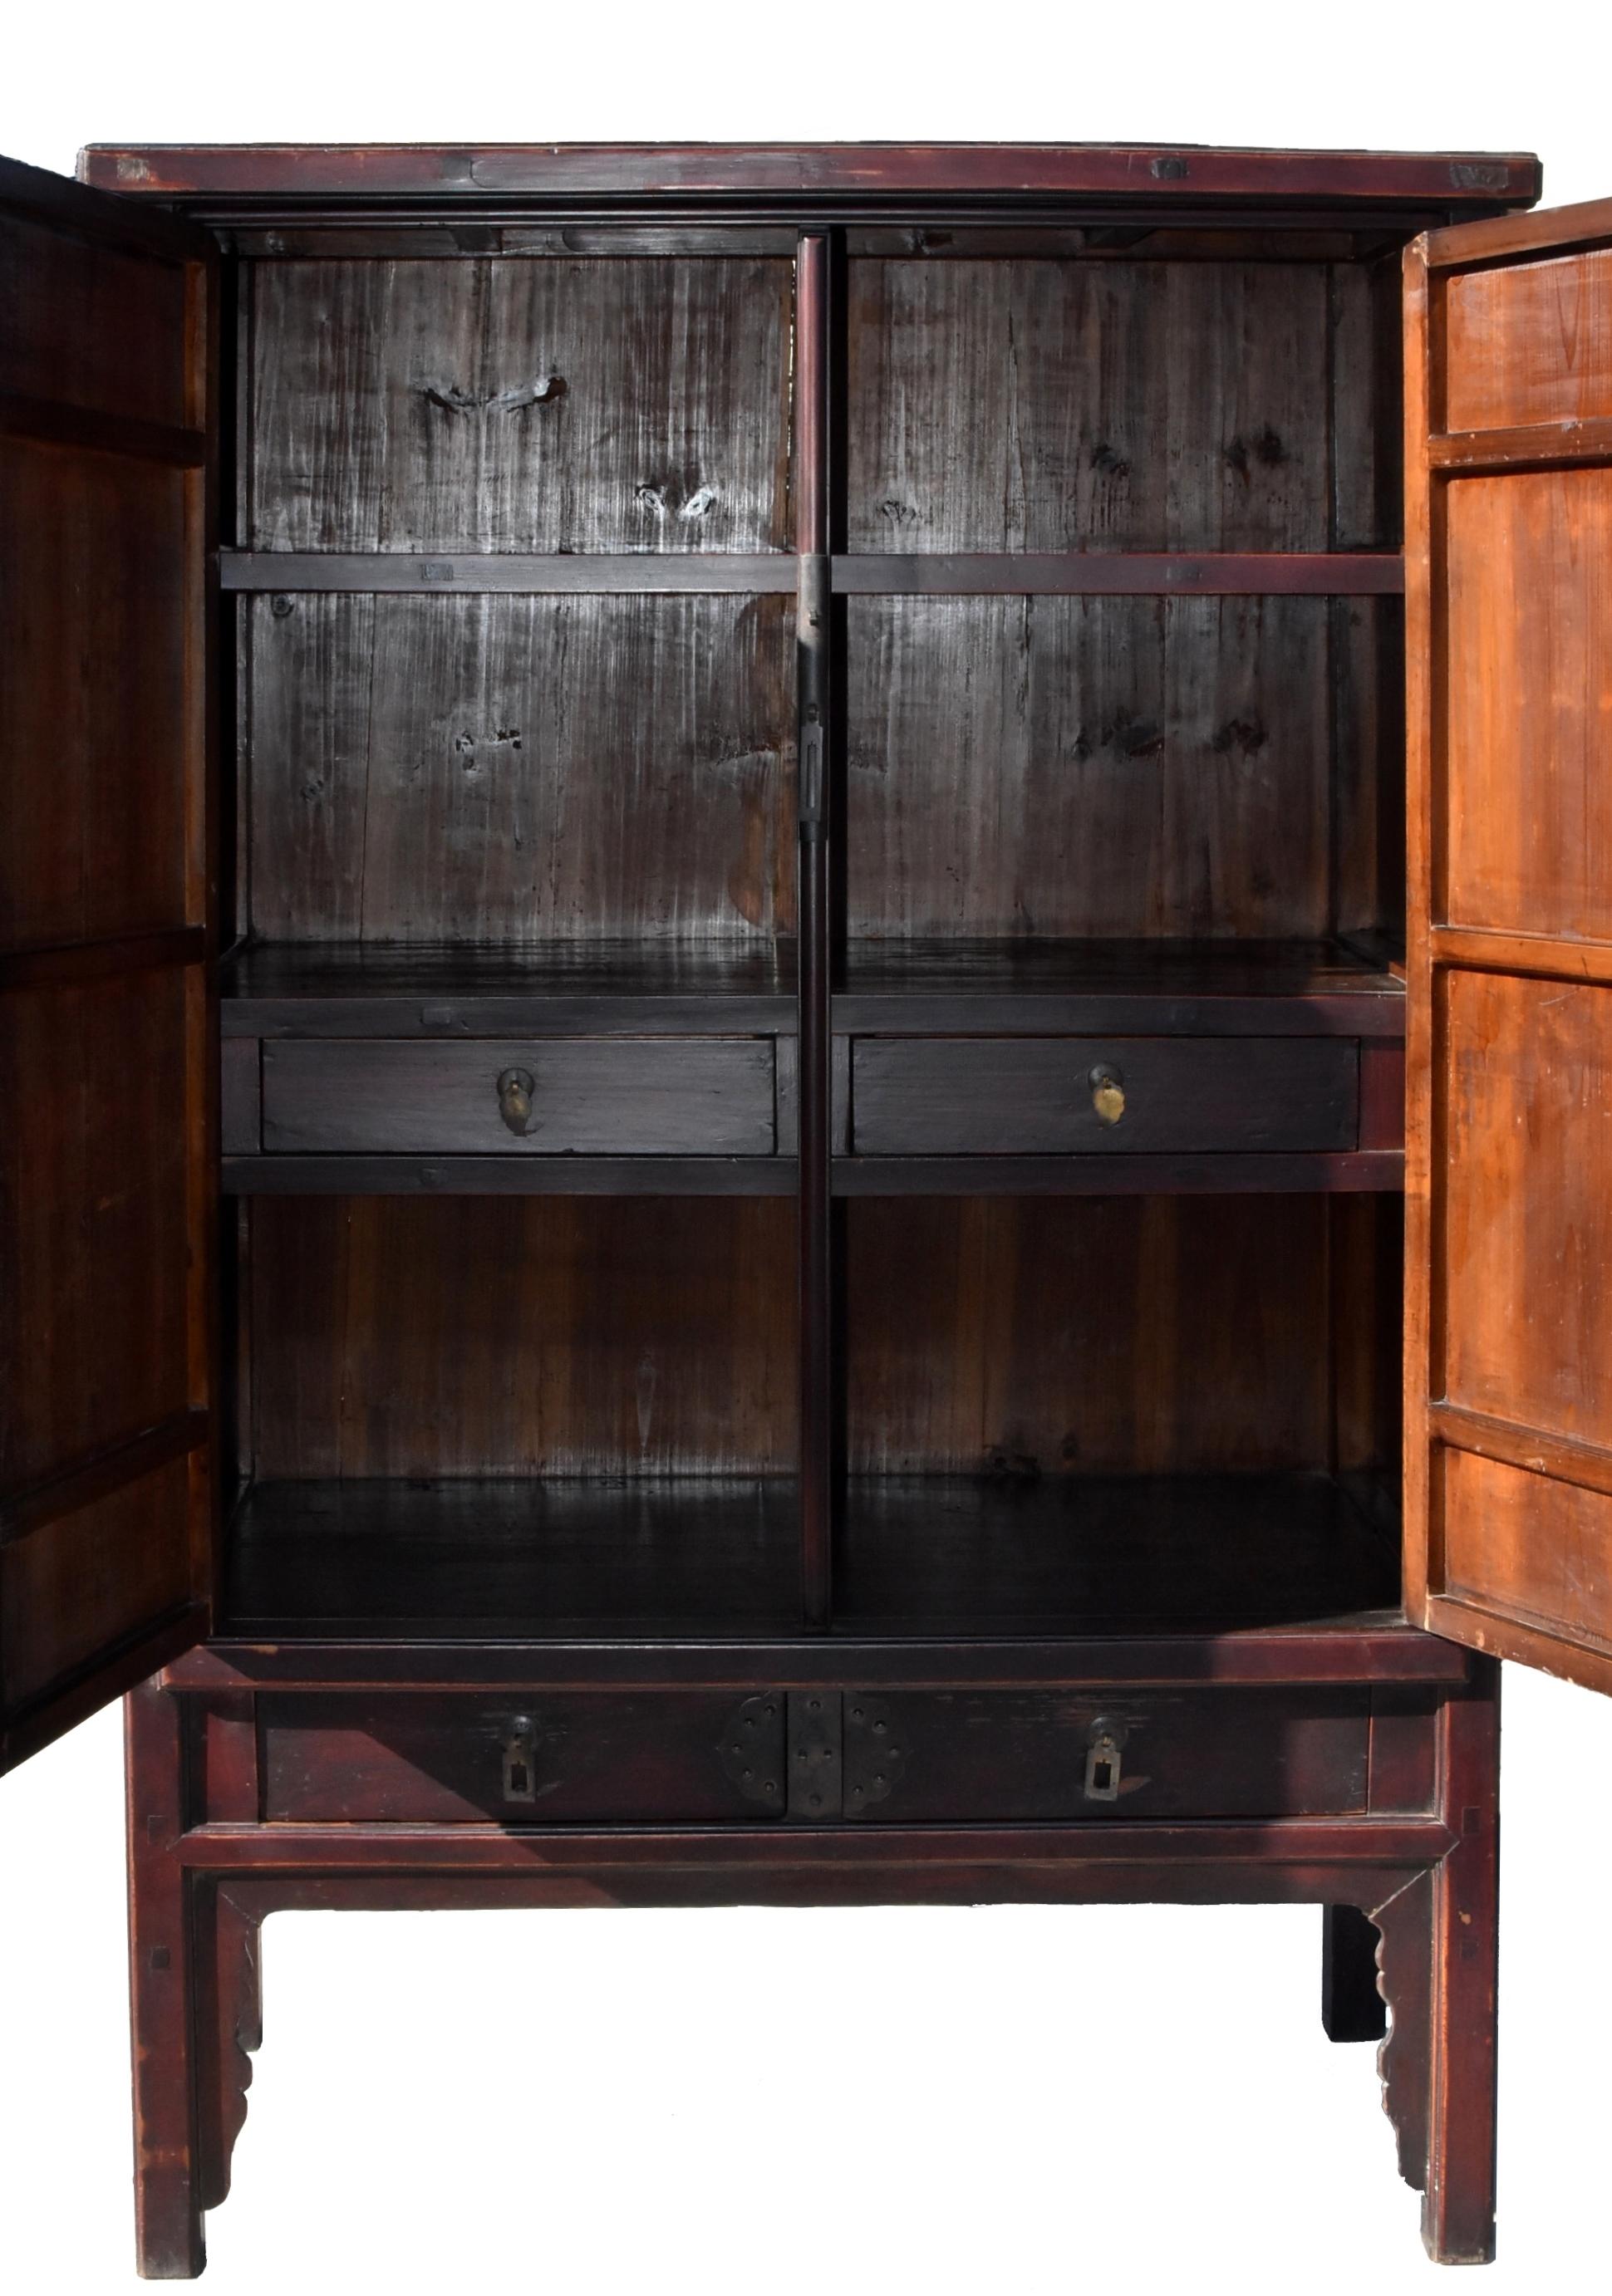 Ein schöner Gelehrtenschrank im Stil der Ming-Dynastie. Die Türen und Seitenteile sind aus massiven Einzelbrettern gefertigt, die auf Gehrung, Zapfen und Zapfenloch gesetzt sind. Zwei äußere und innere Schubladen und ein abnehmbarer Einlegeboden